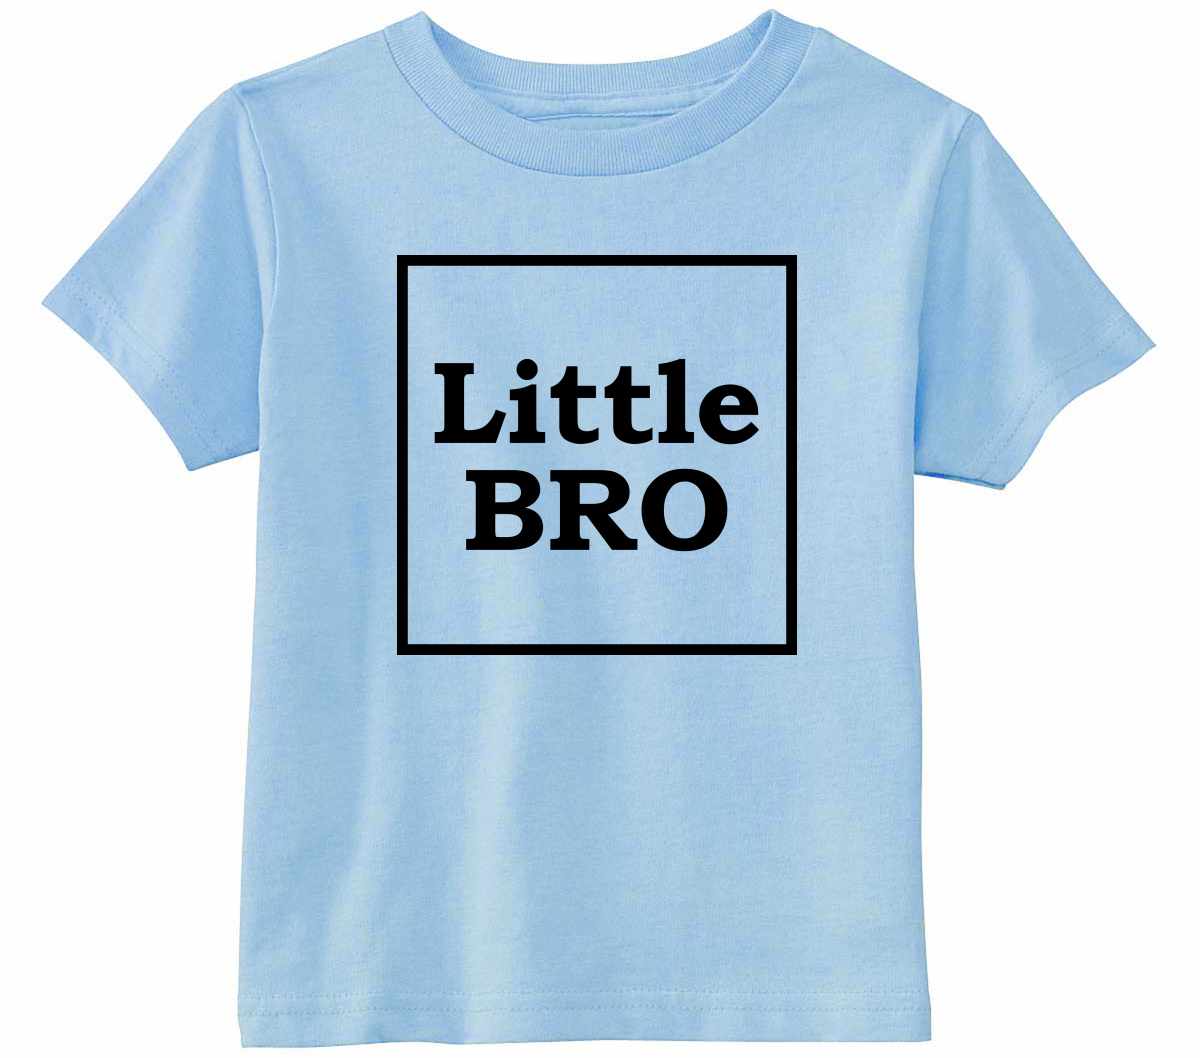 Little Bro on Infant-Toddler T-Shirt